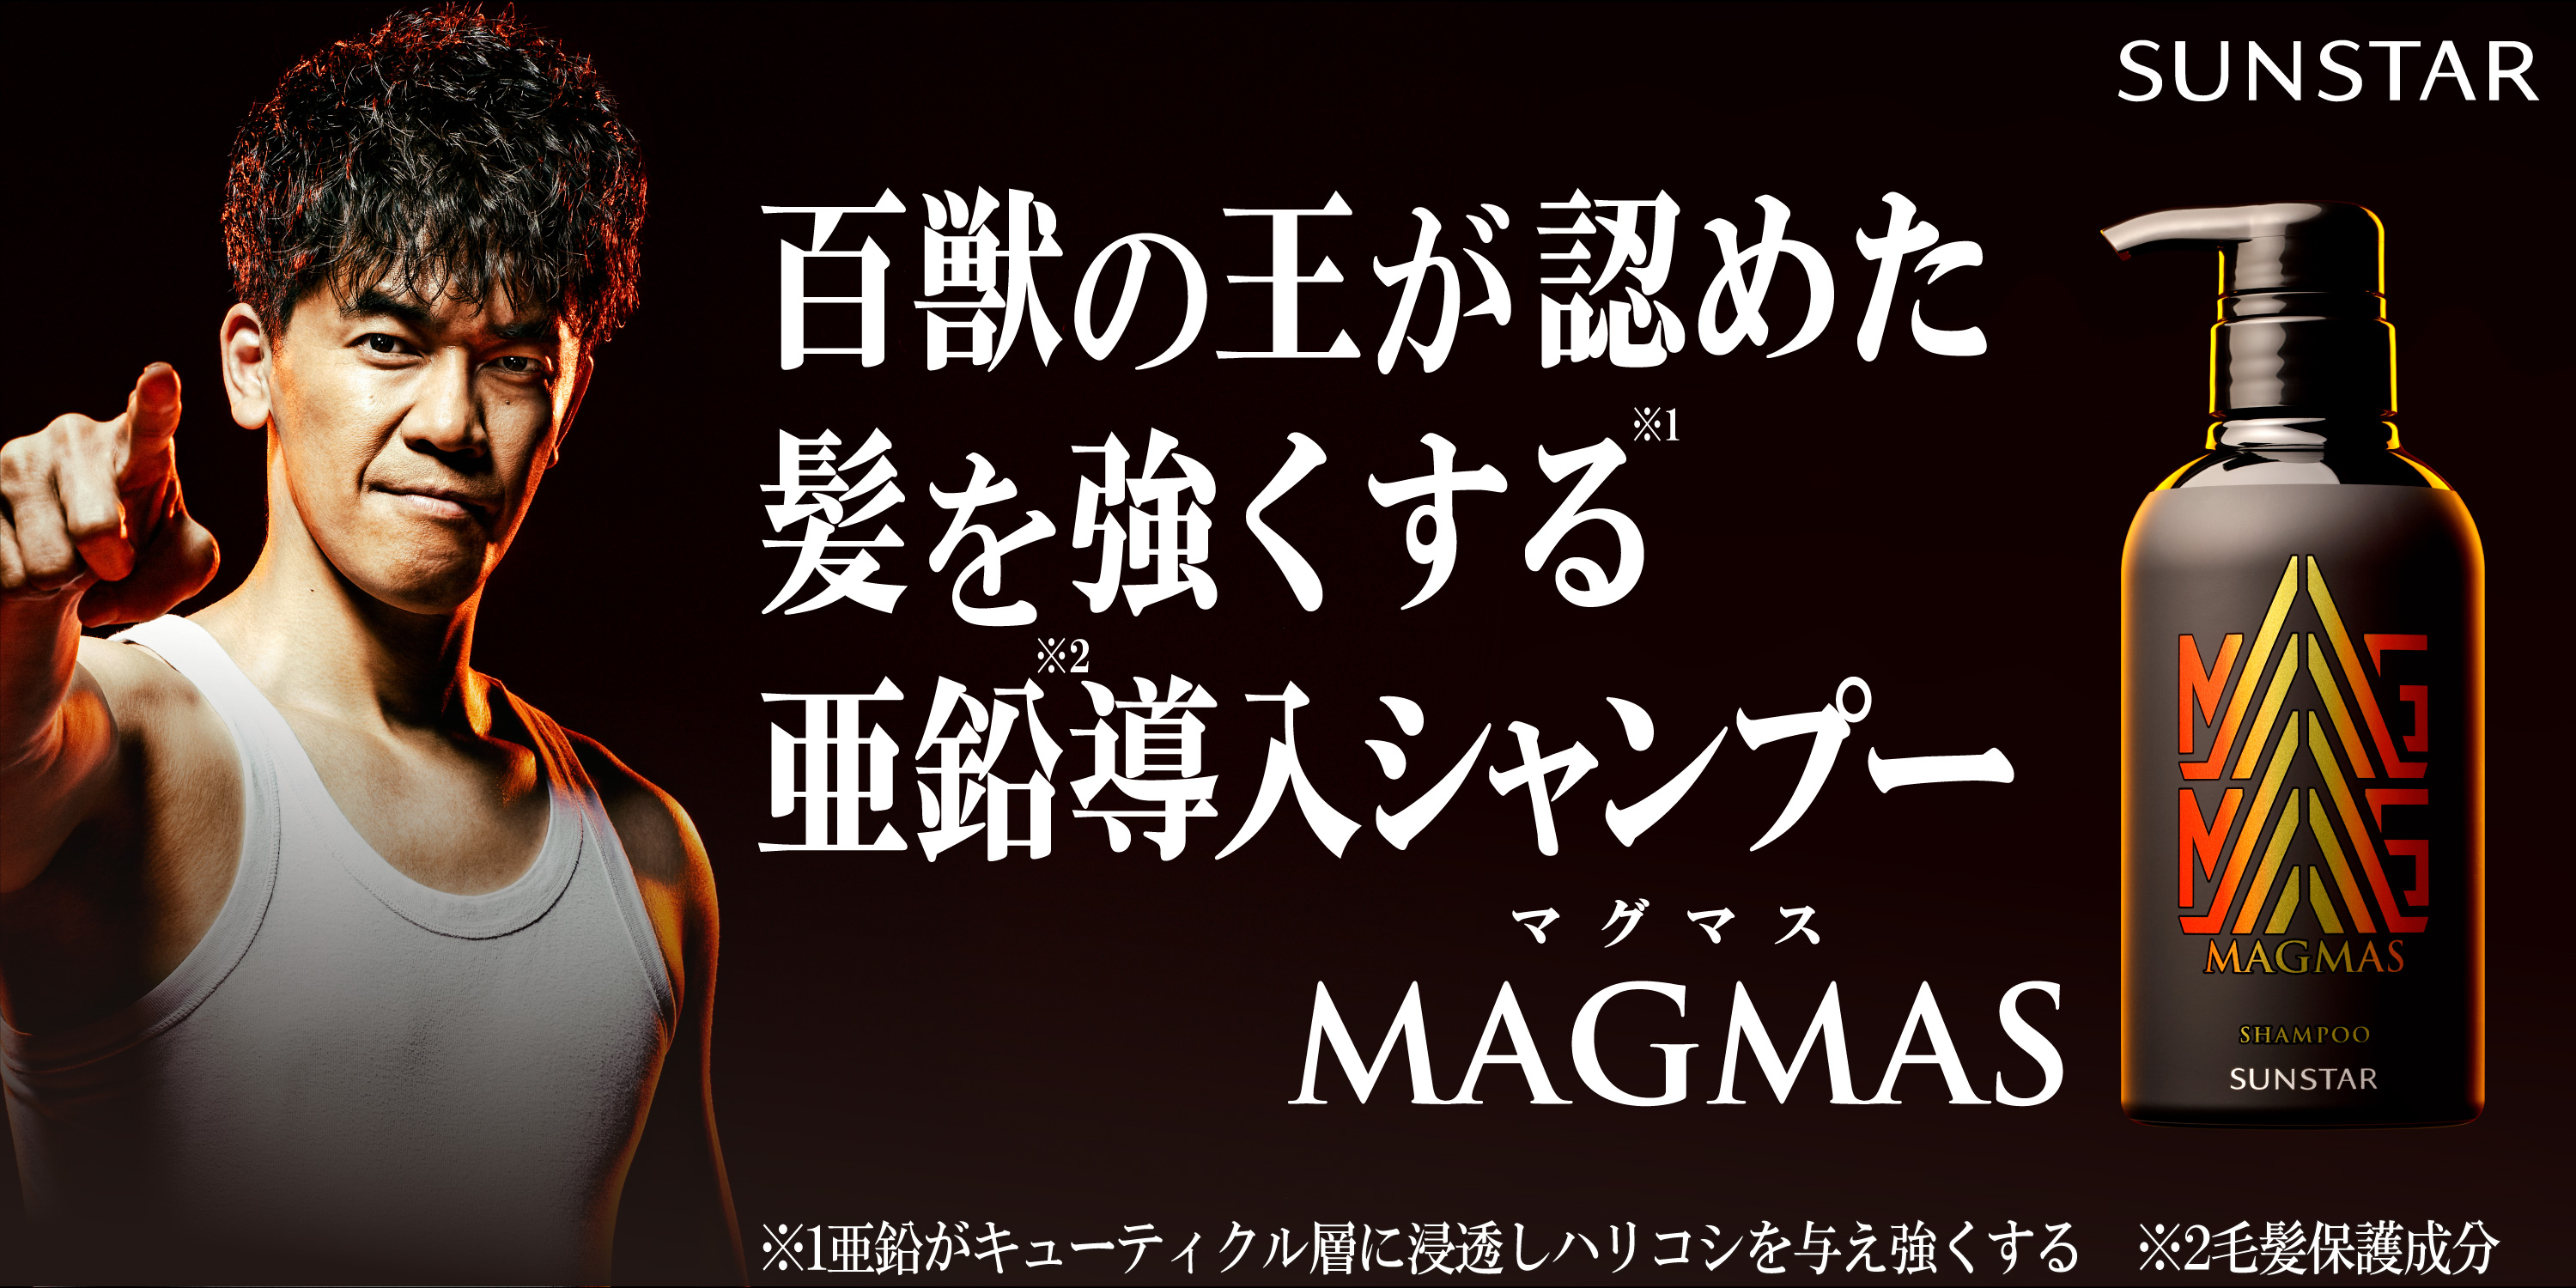 ～武井壮、MAGMASアンバサダーに就任～　百獣の王が認めた髪を強くする亜鉛導入シャンプー「MAGMAS」 WEB動画第一弾を10月16日より公開開始